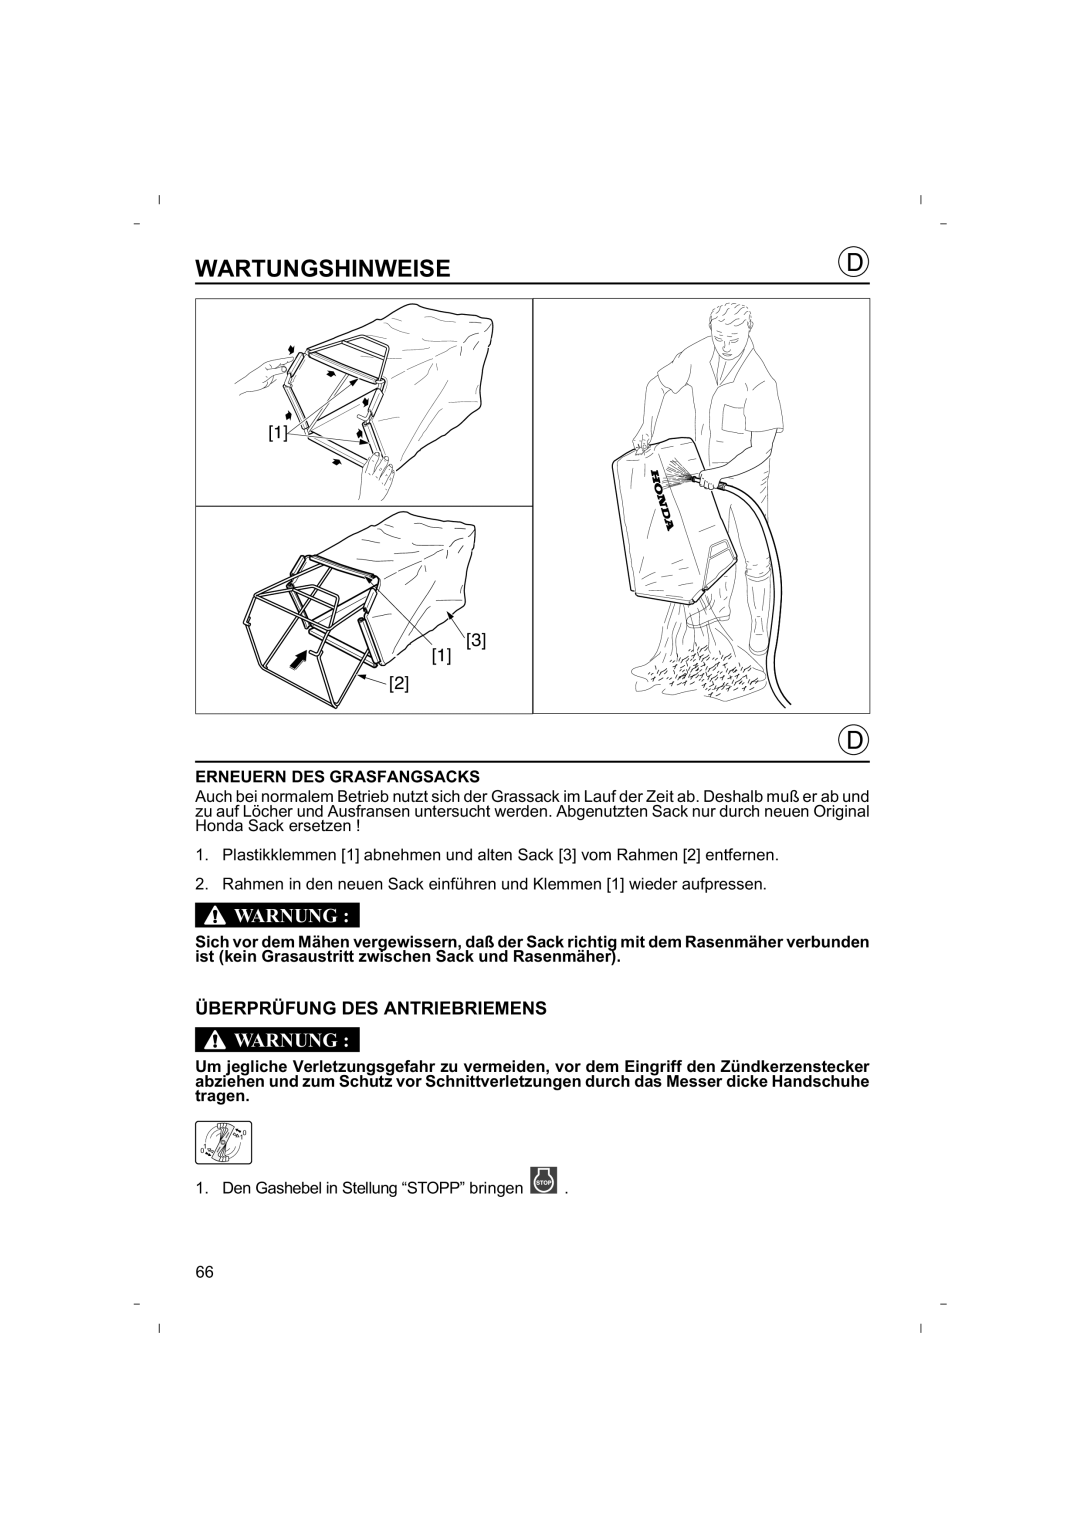 Honda Power Equipment HRB425C owner manual Überprüfung Des Antriebriemens, Wartungshinweise, Warnung 